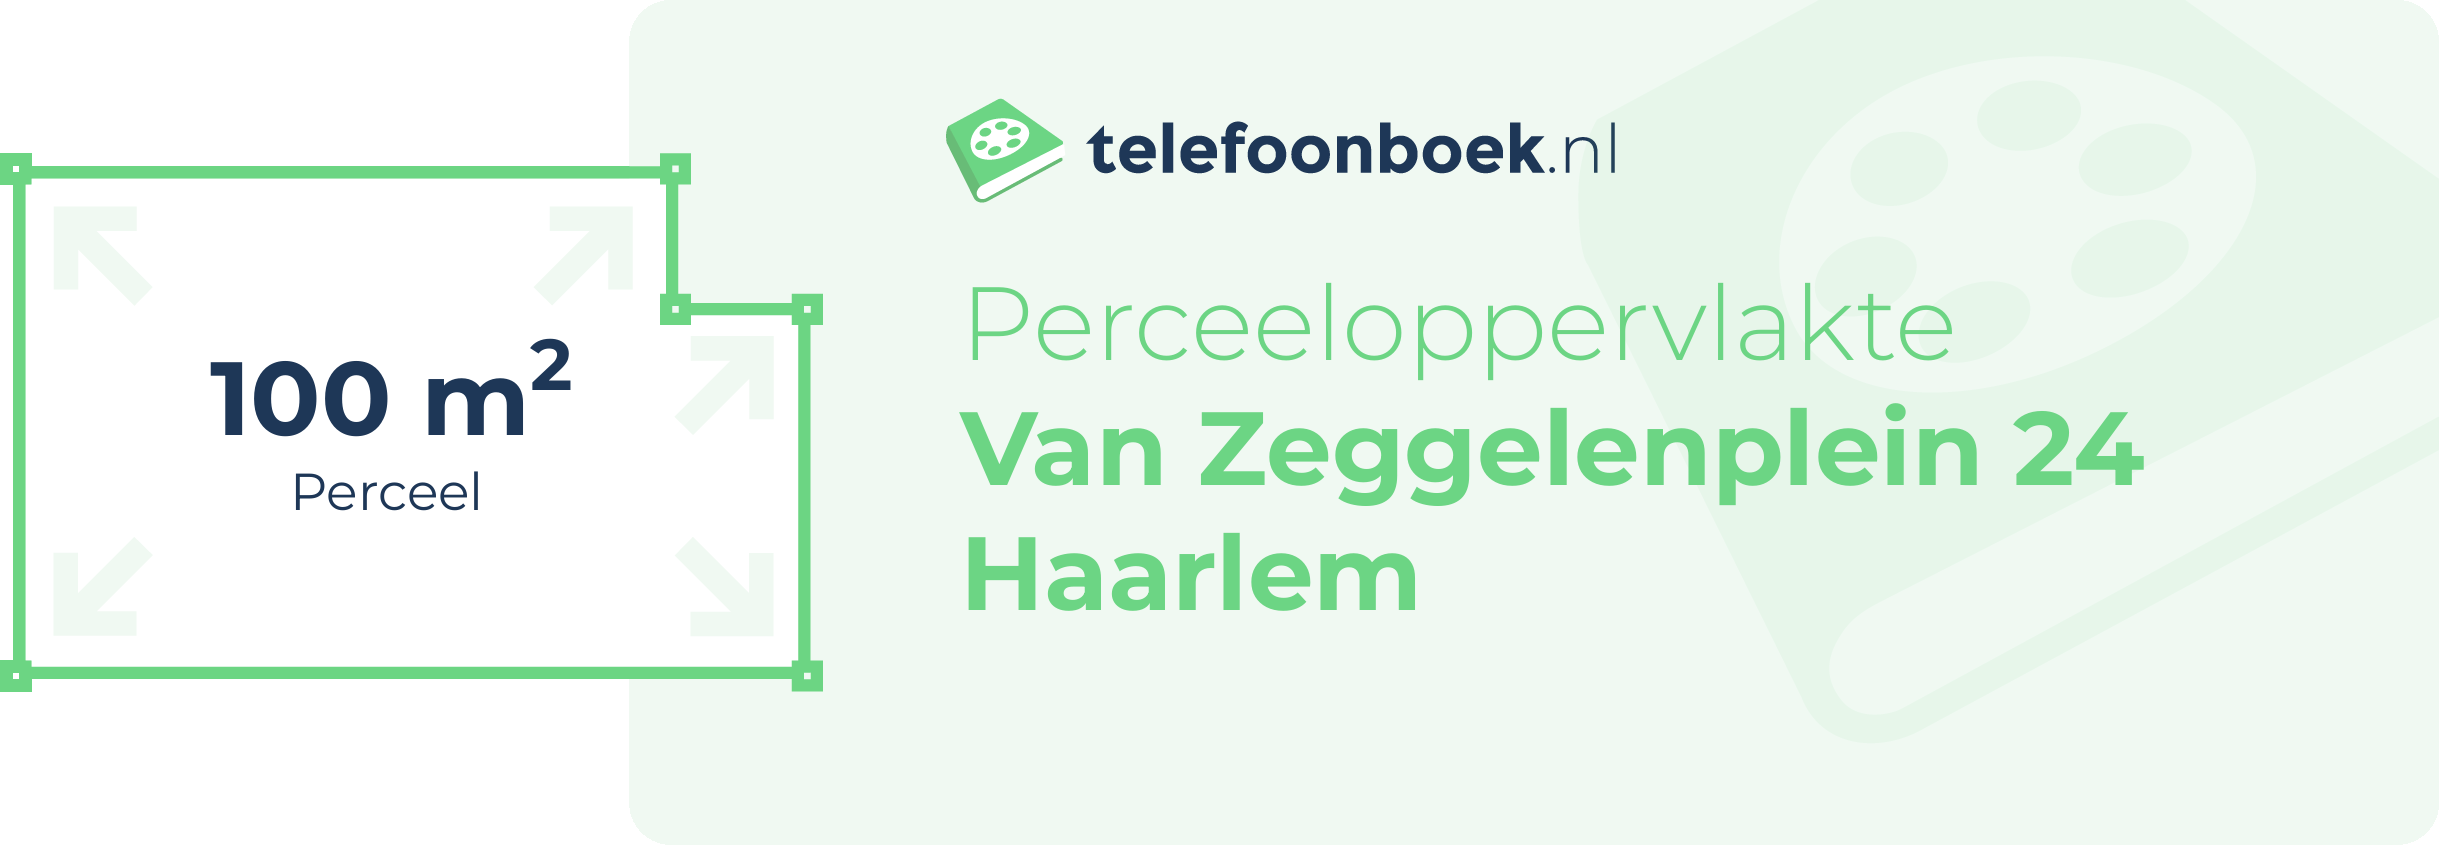 Perceeloppervlakte Van Zeggelenplein 24 Haarlem